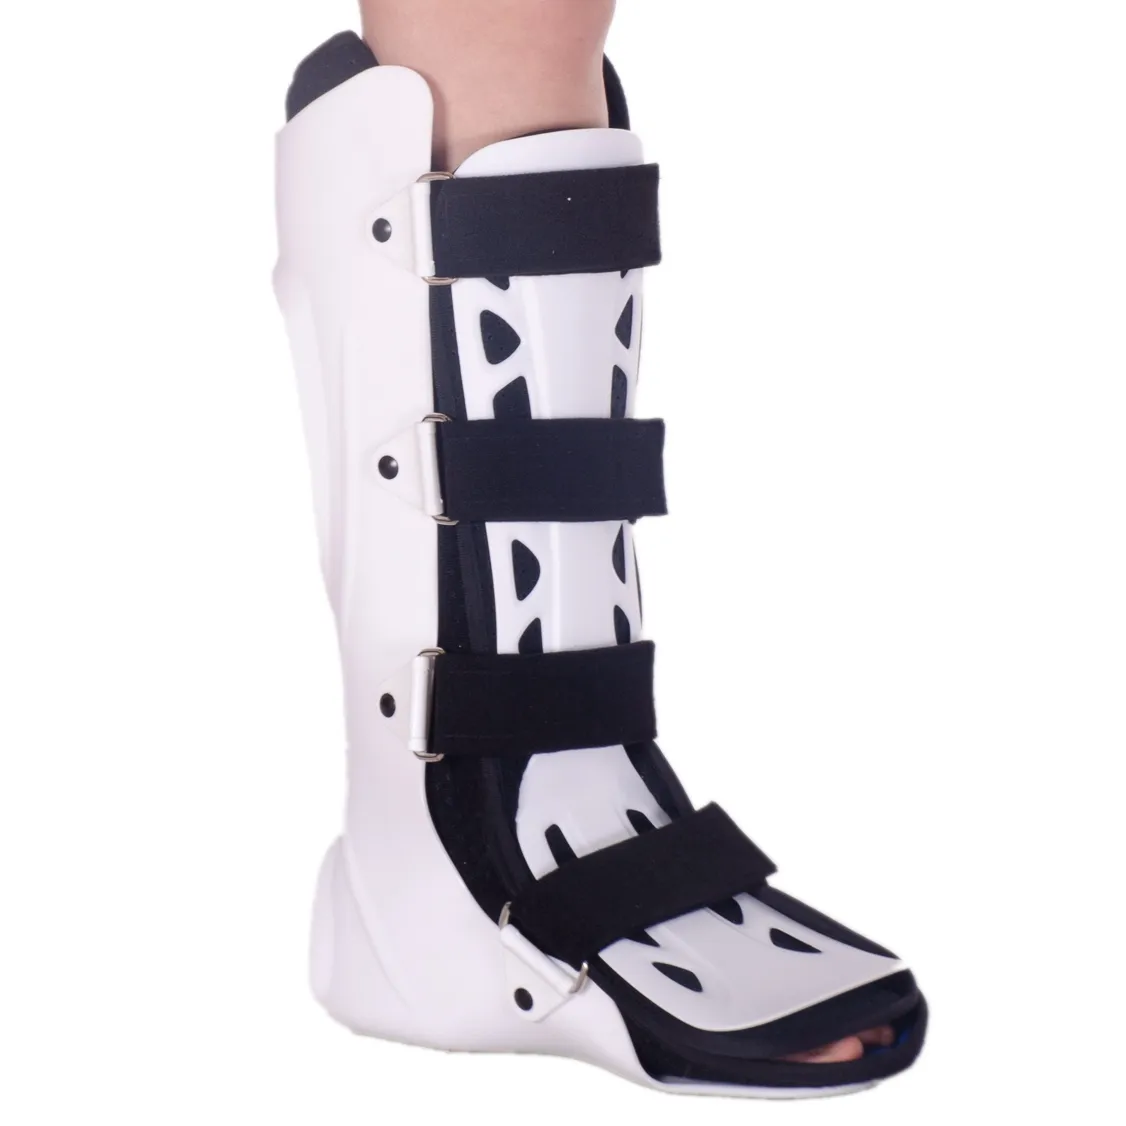 Botas ortopédicas para caminar Super Air Cushioned Botas ortopédicas para caminar para cirugía del pie